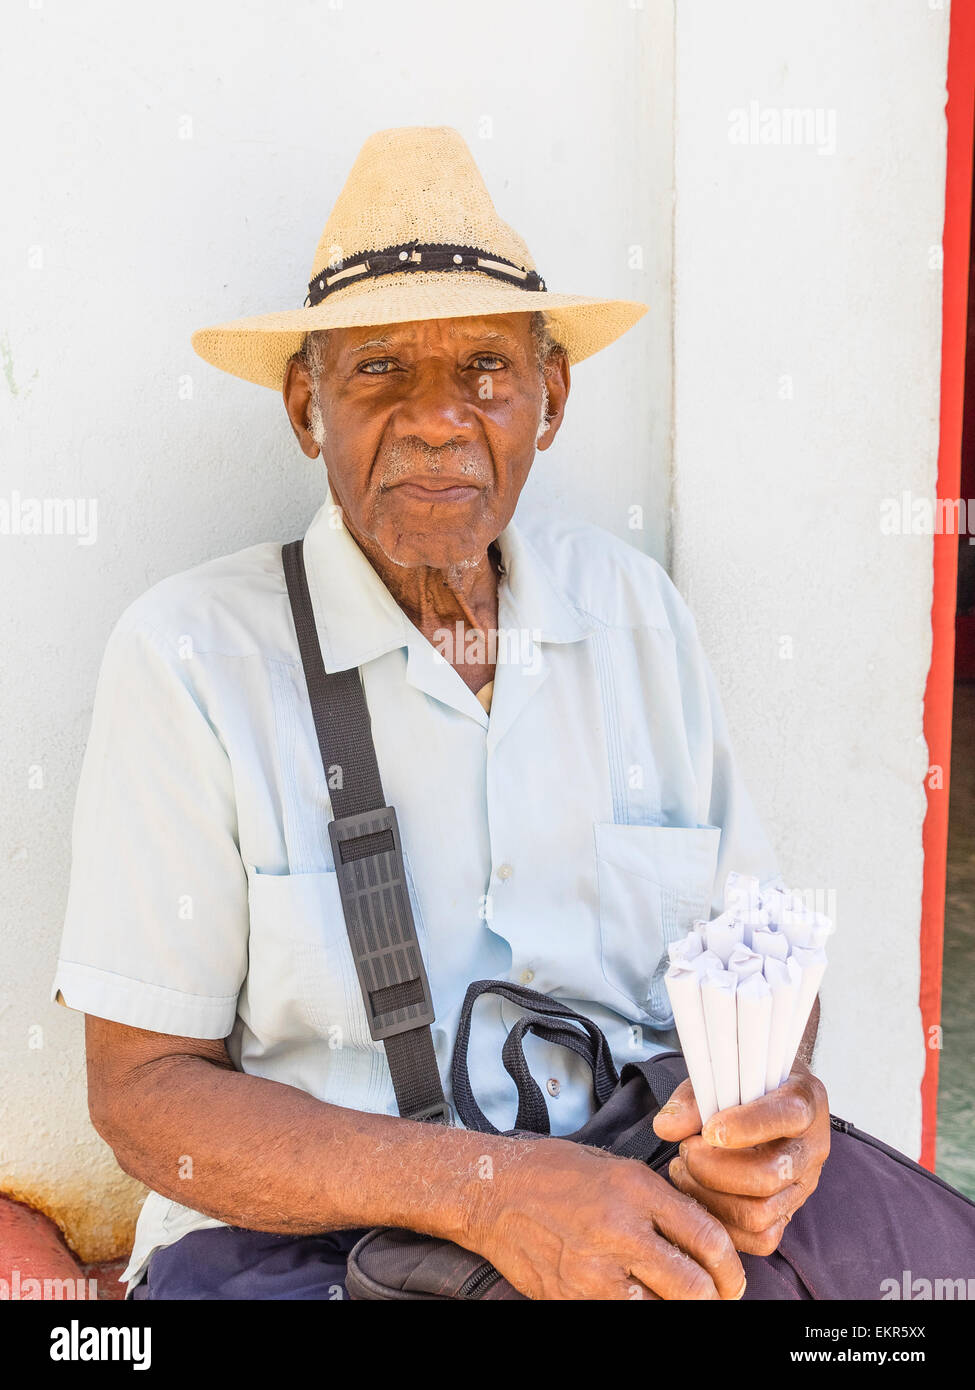 Testa e spalle ritratto di un maschio di afro-cubane senior citizen vende noccioline nel tradizionale coni di carta nel cappello di paglia. Foto Stock